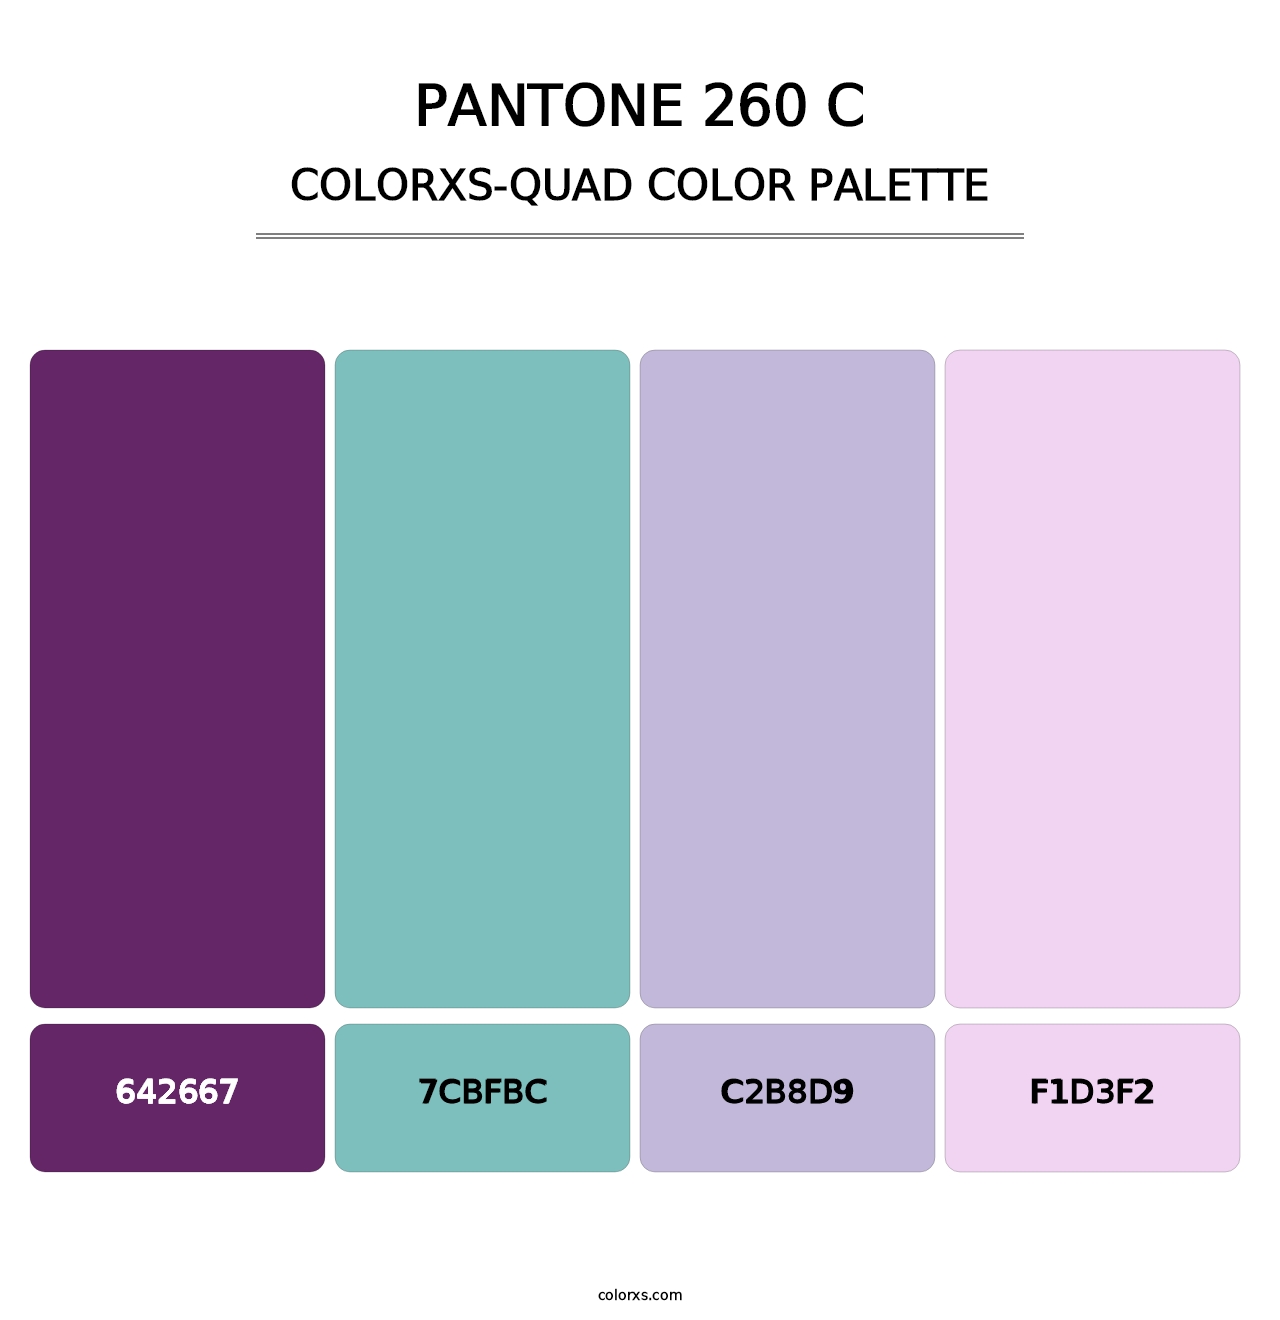 PANTONE 260 C - Colorxs Quad Palette